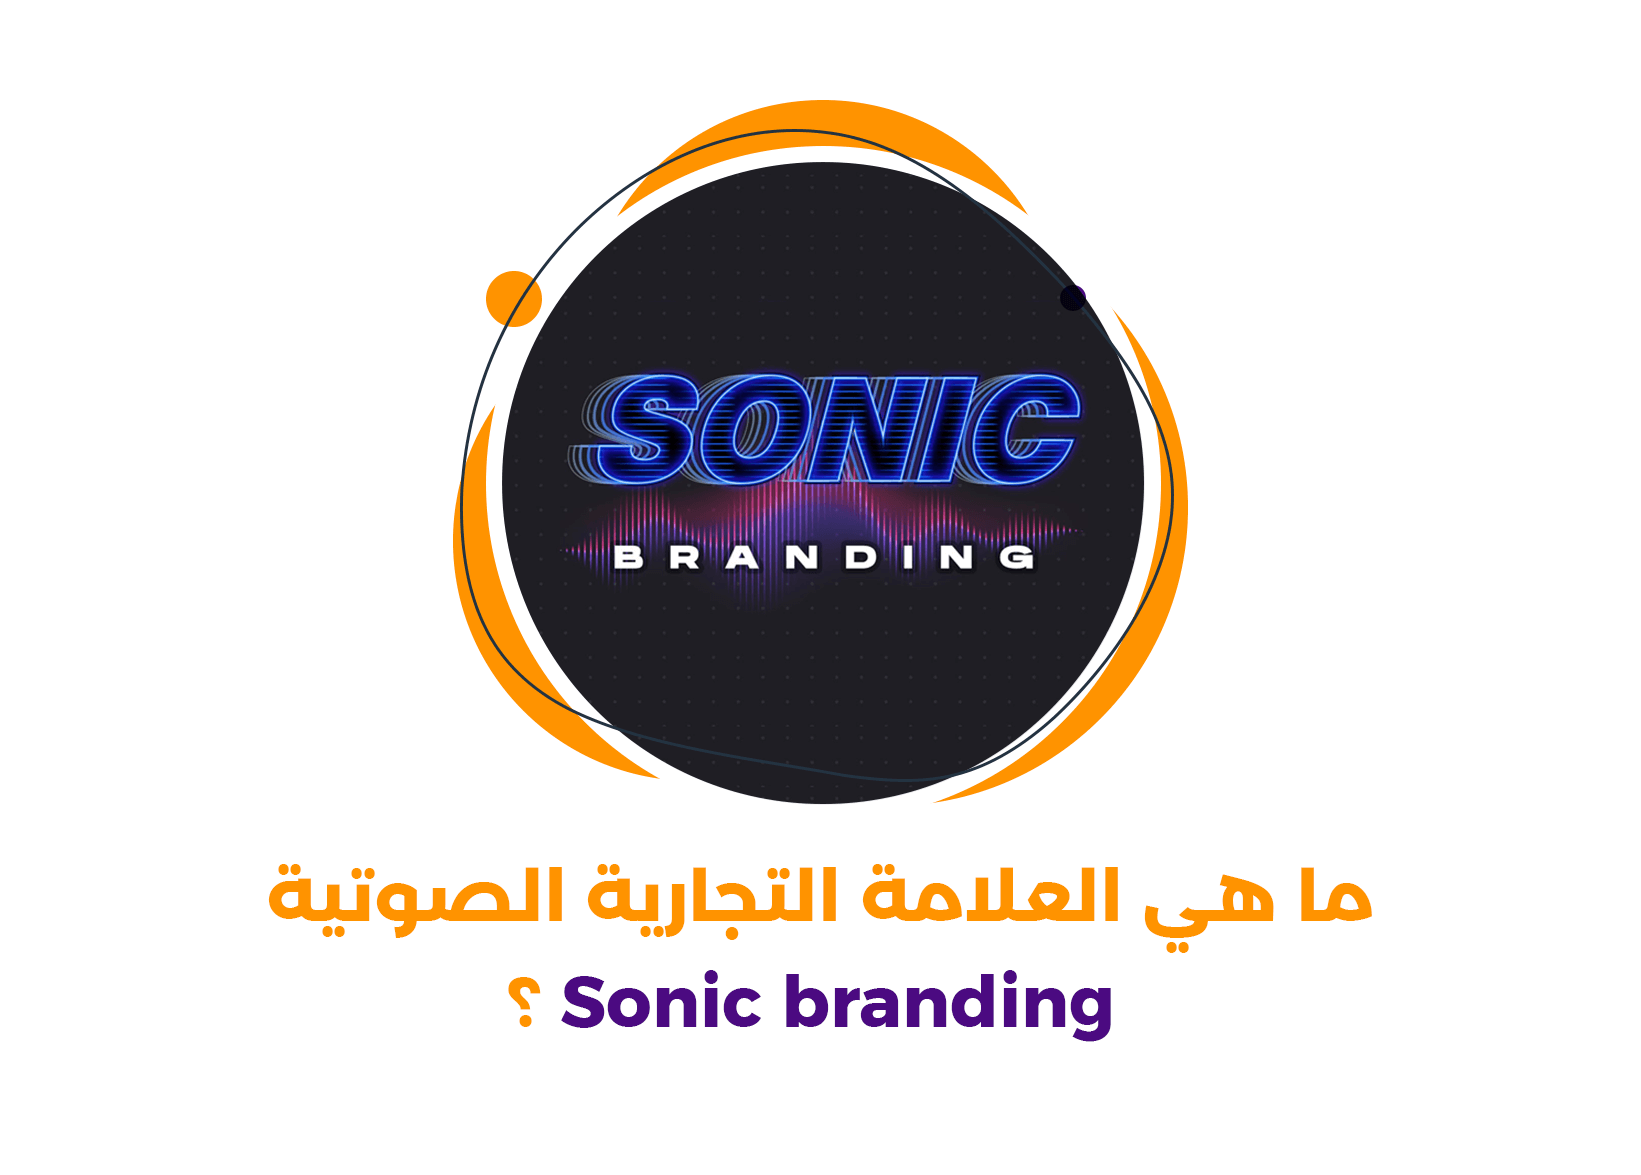 ما هي العلامة التجارية الصوتية Sonic branding